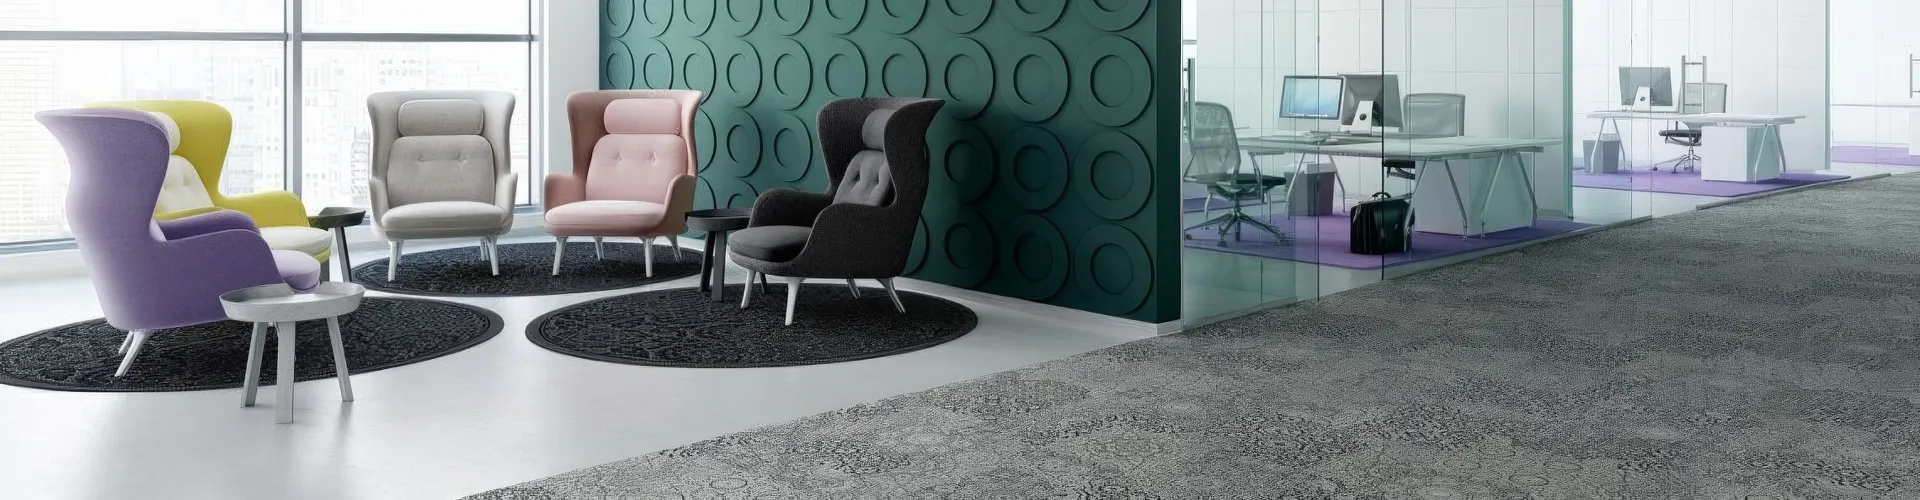 Bild Aktuelles: Modernes Bürointerieur mit einer Reihe Sessel in unterschiedlichen Polsterstoffen vor einer grün strukturierten Wand und Teppichboden mit Muster.